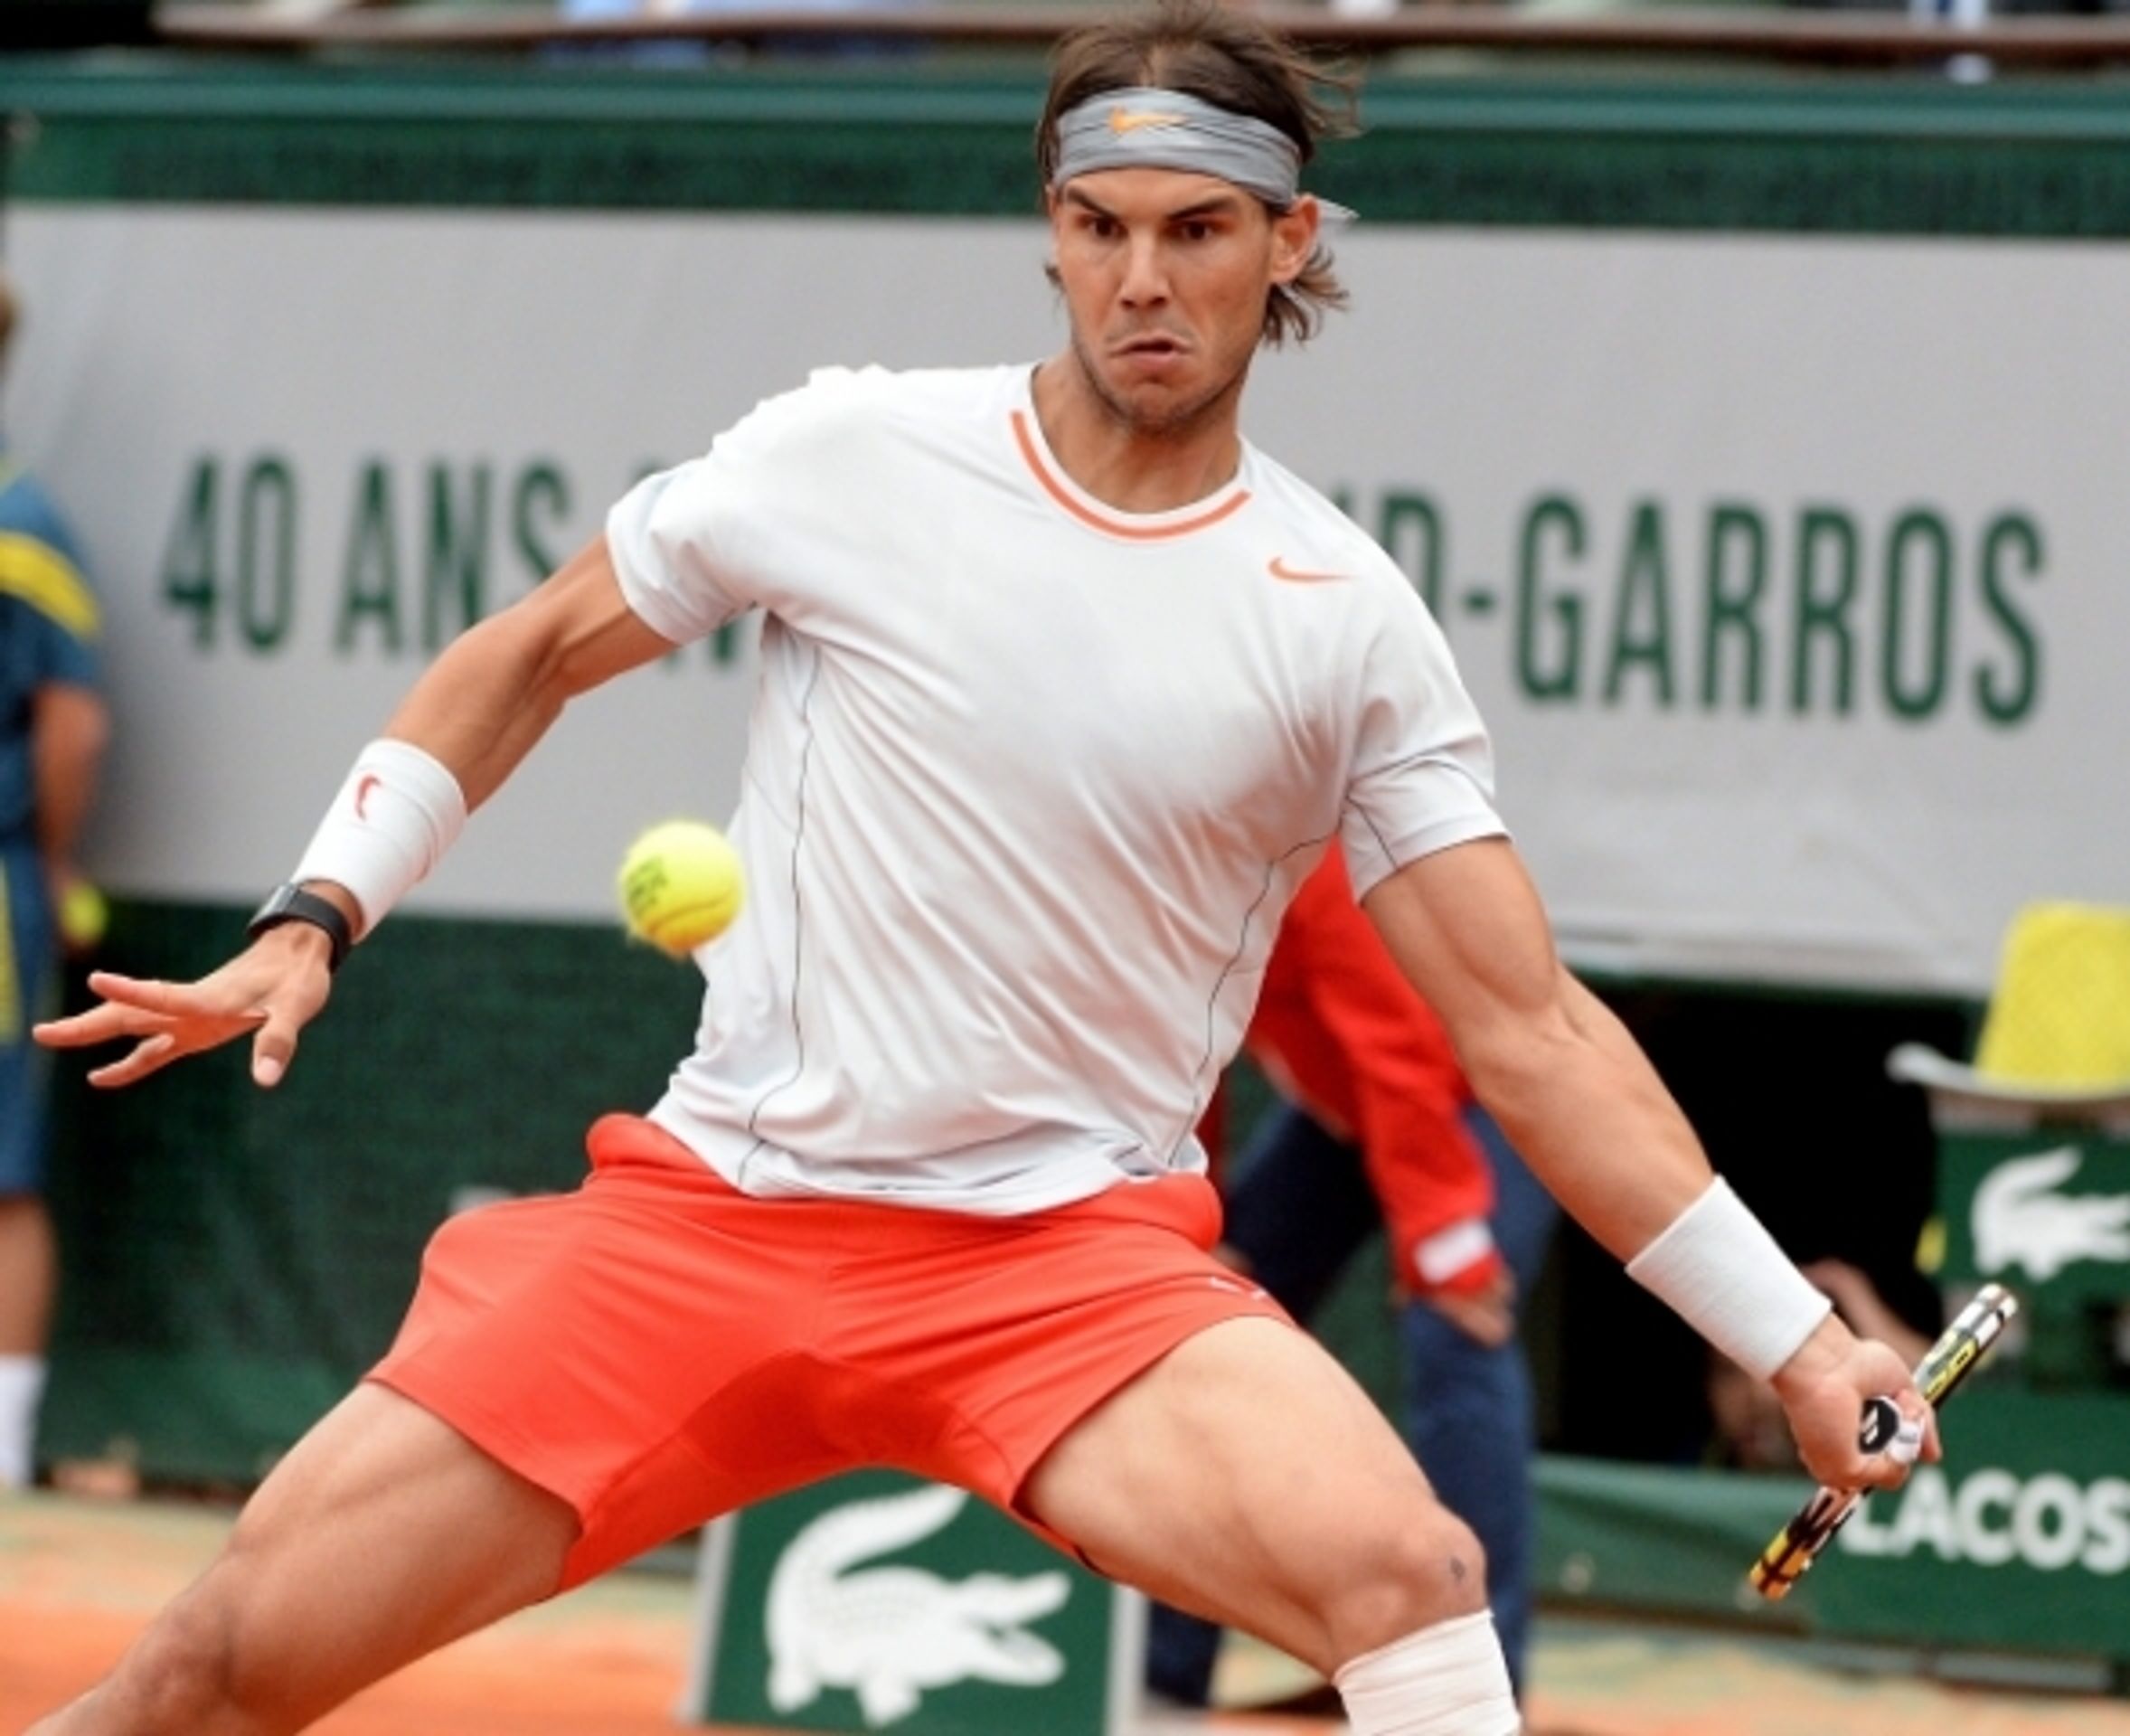 Nadal je poosmé šampionem French Open - 5 - GALERIE: Nadal je poosmé šampionem French Open (5/10)